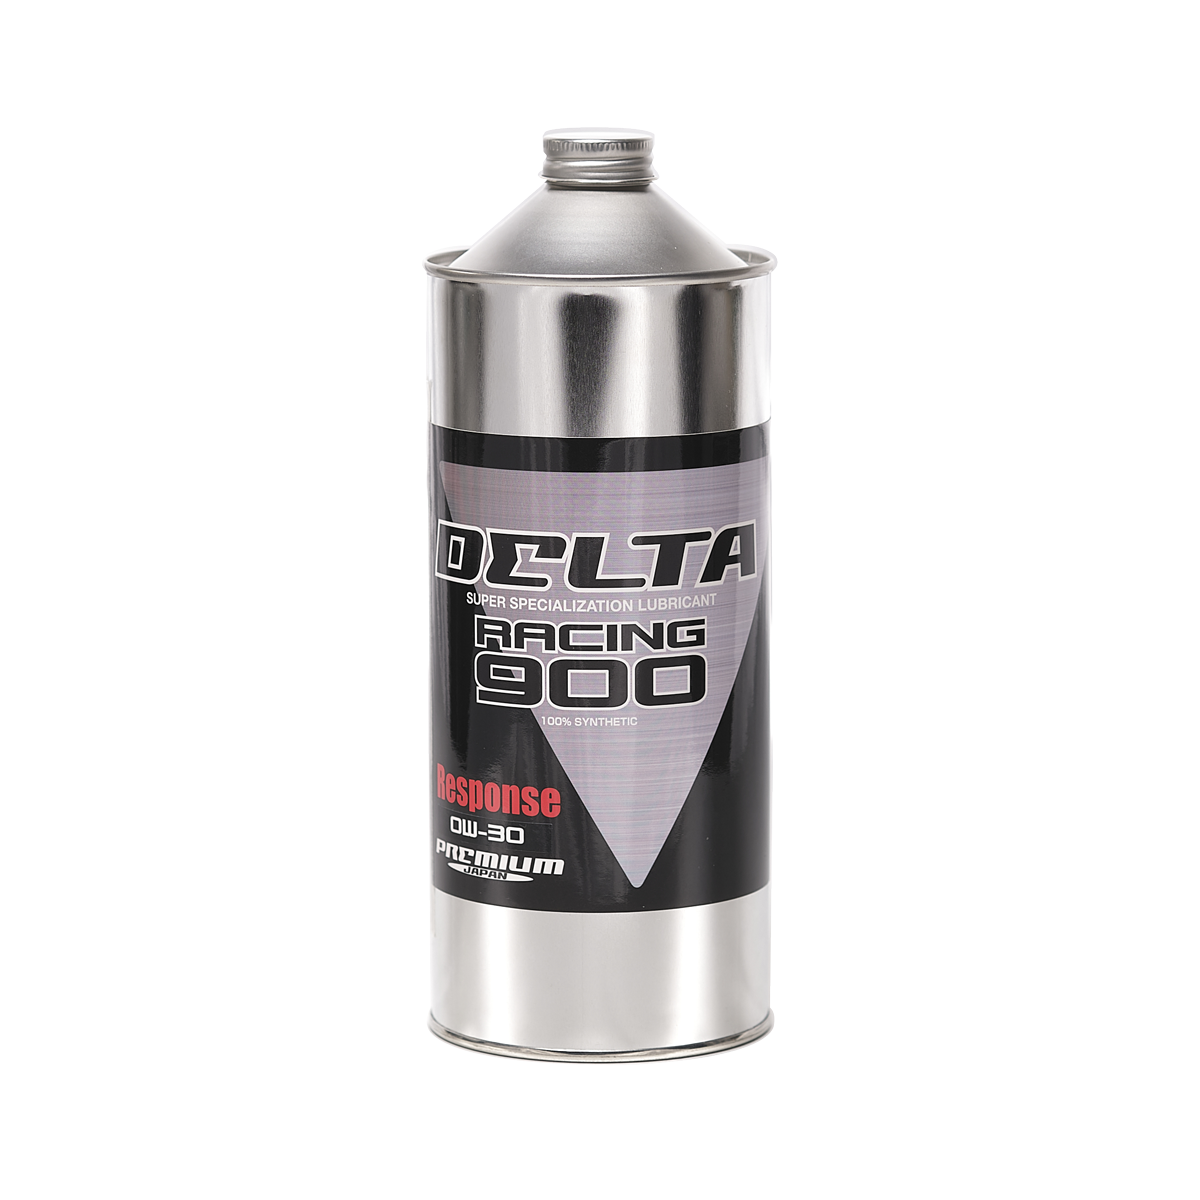 【低価格安】DELTA RACING 900 Response OIL 15W-50 4L+1L+エレメント付set エンジンオイル